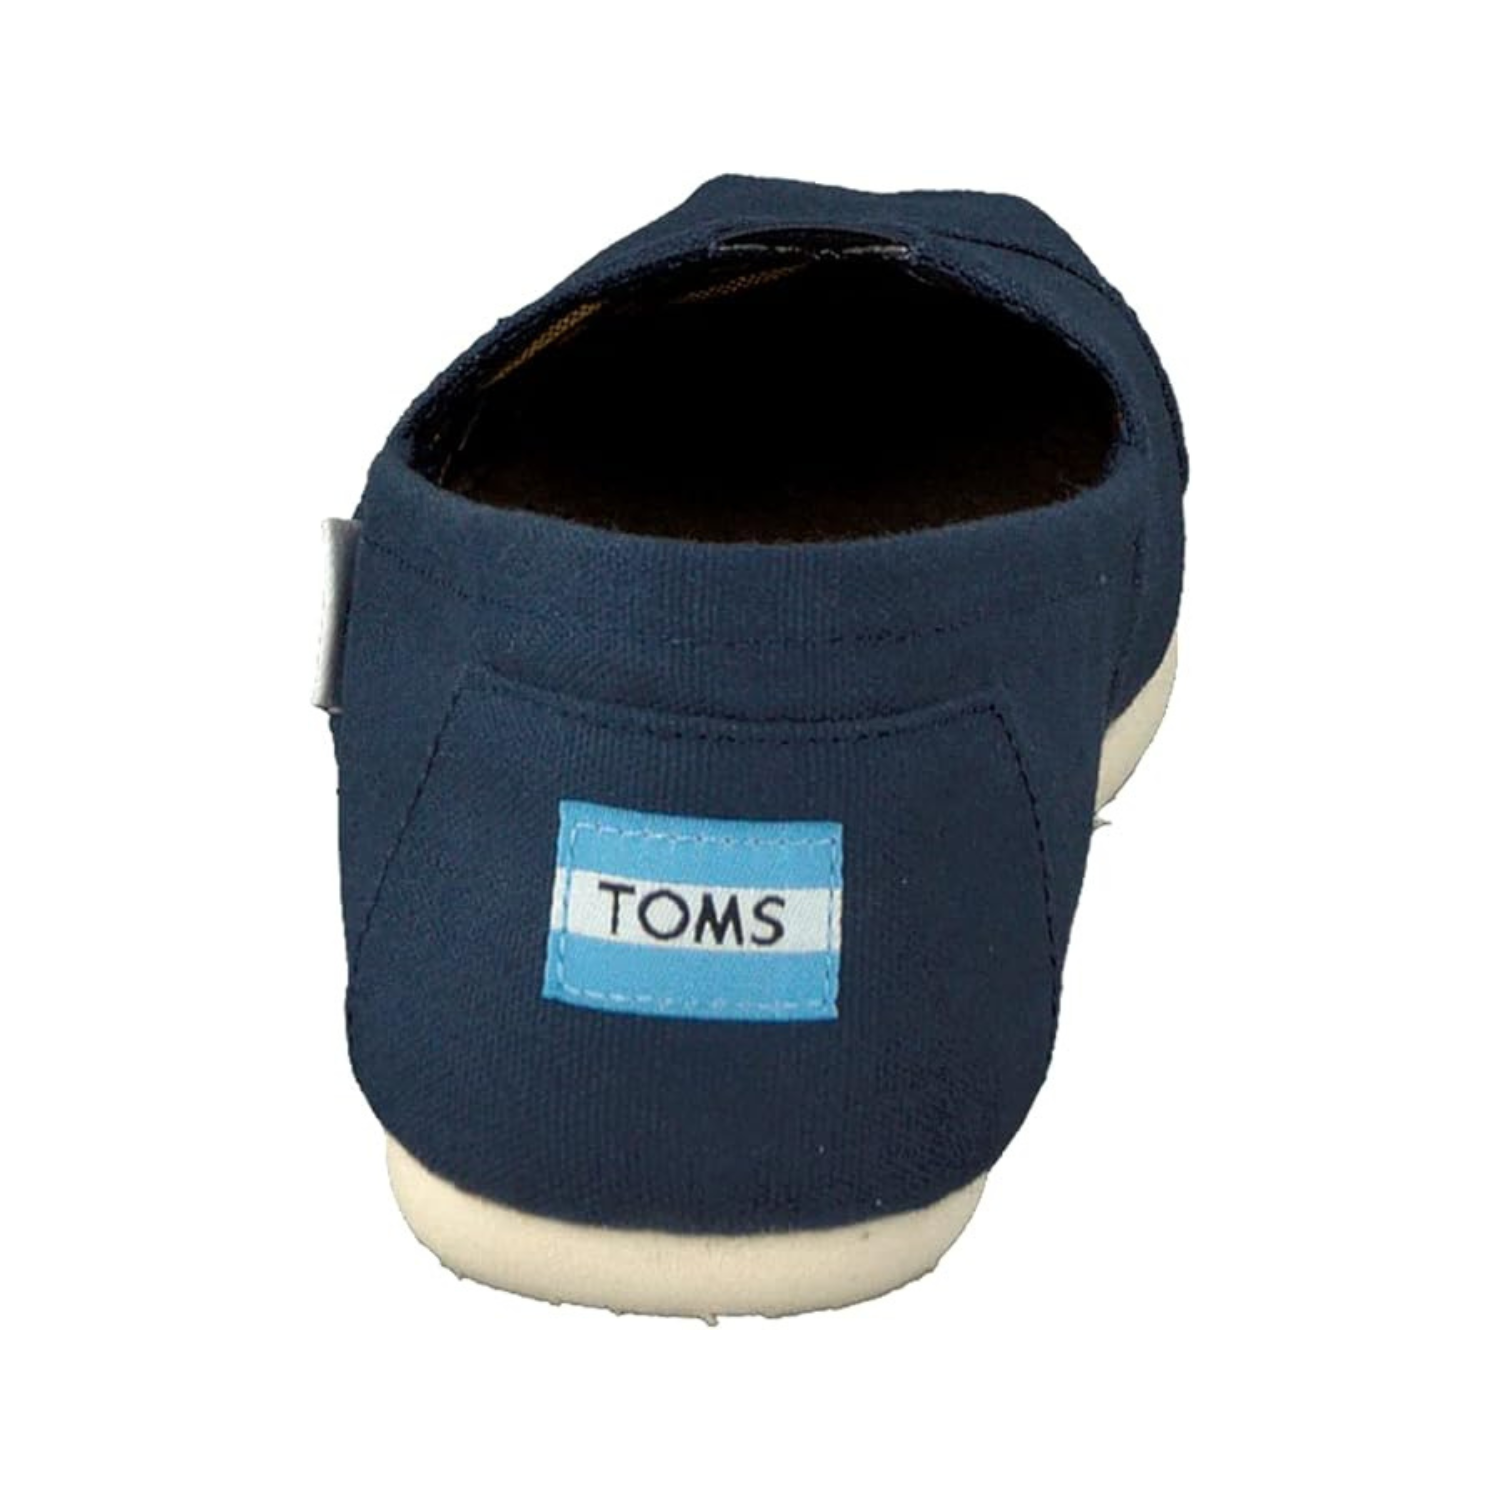 toms-chaussures-femme-alpargata-women's-shoes-5